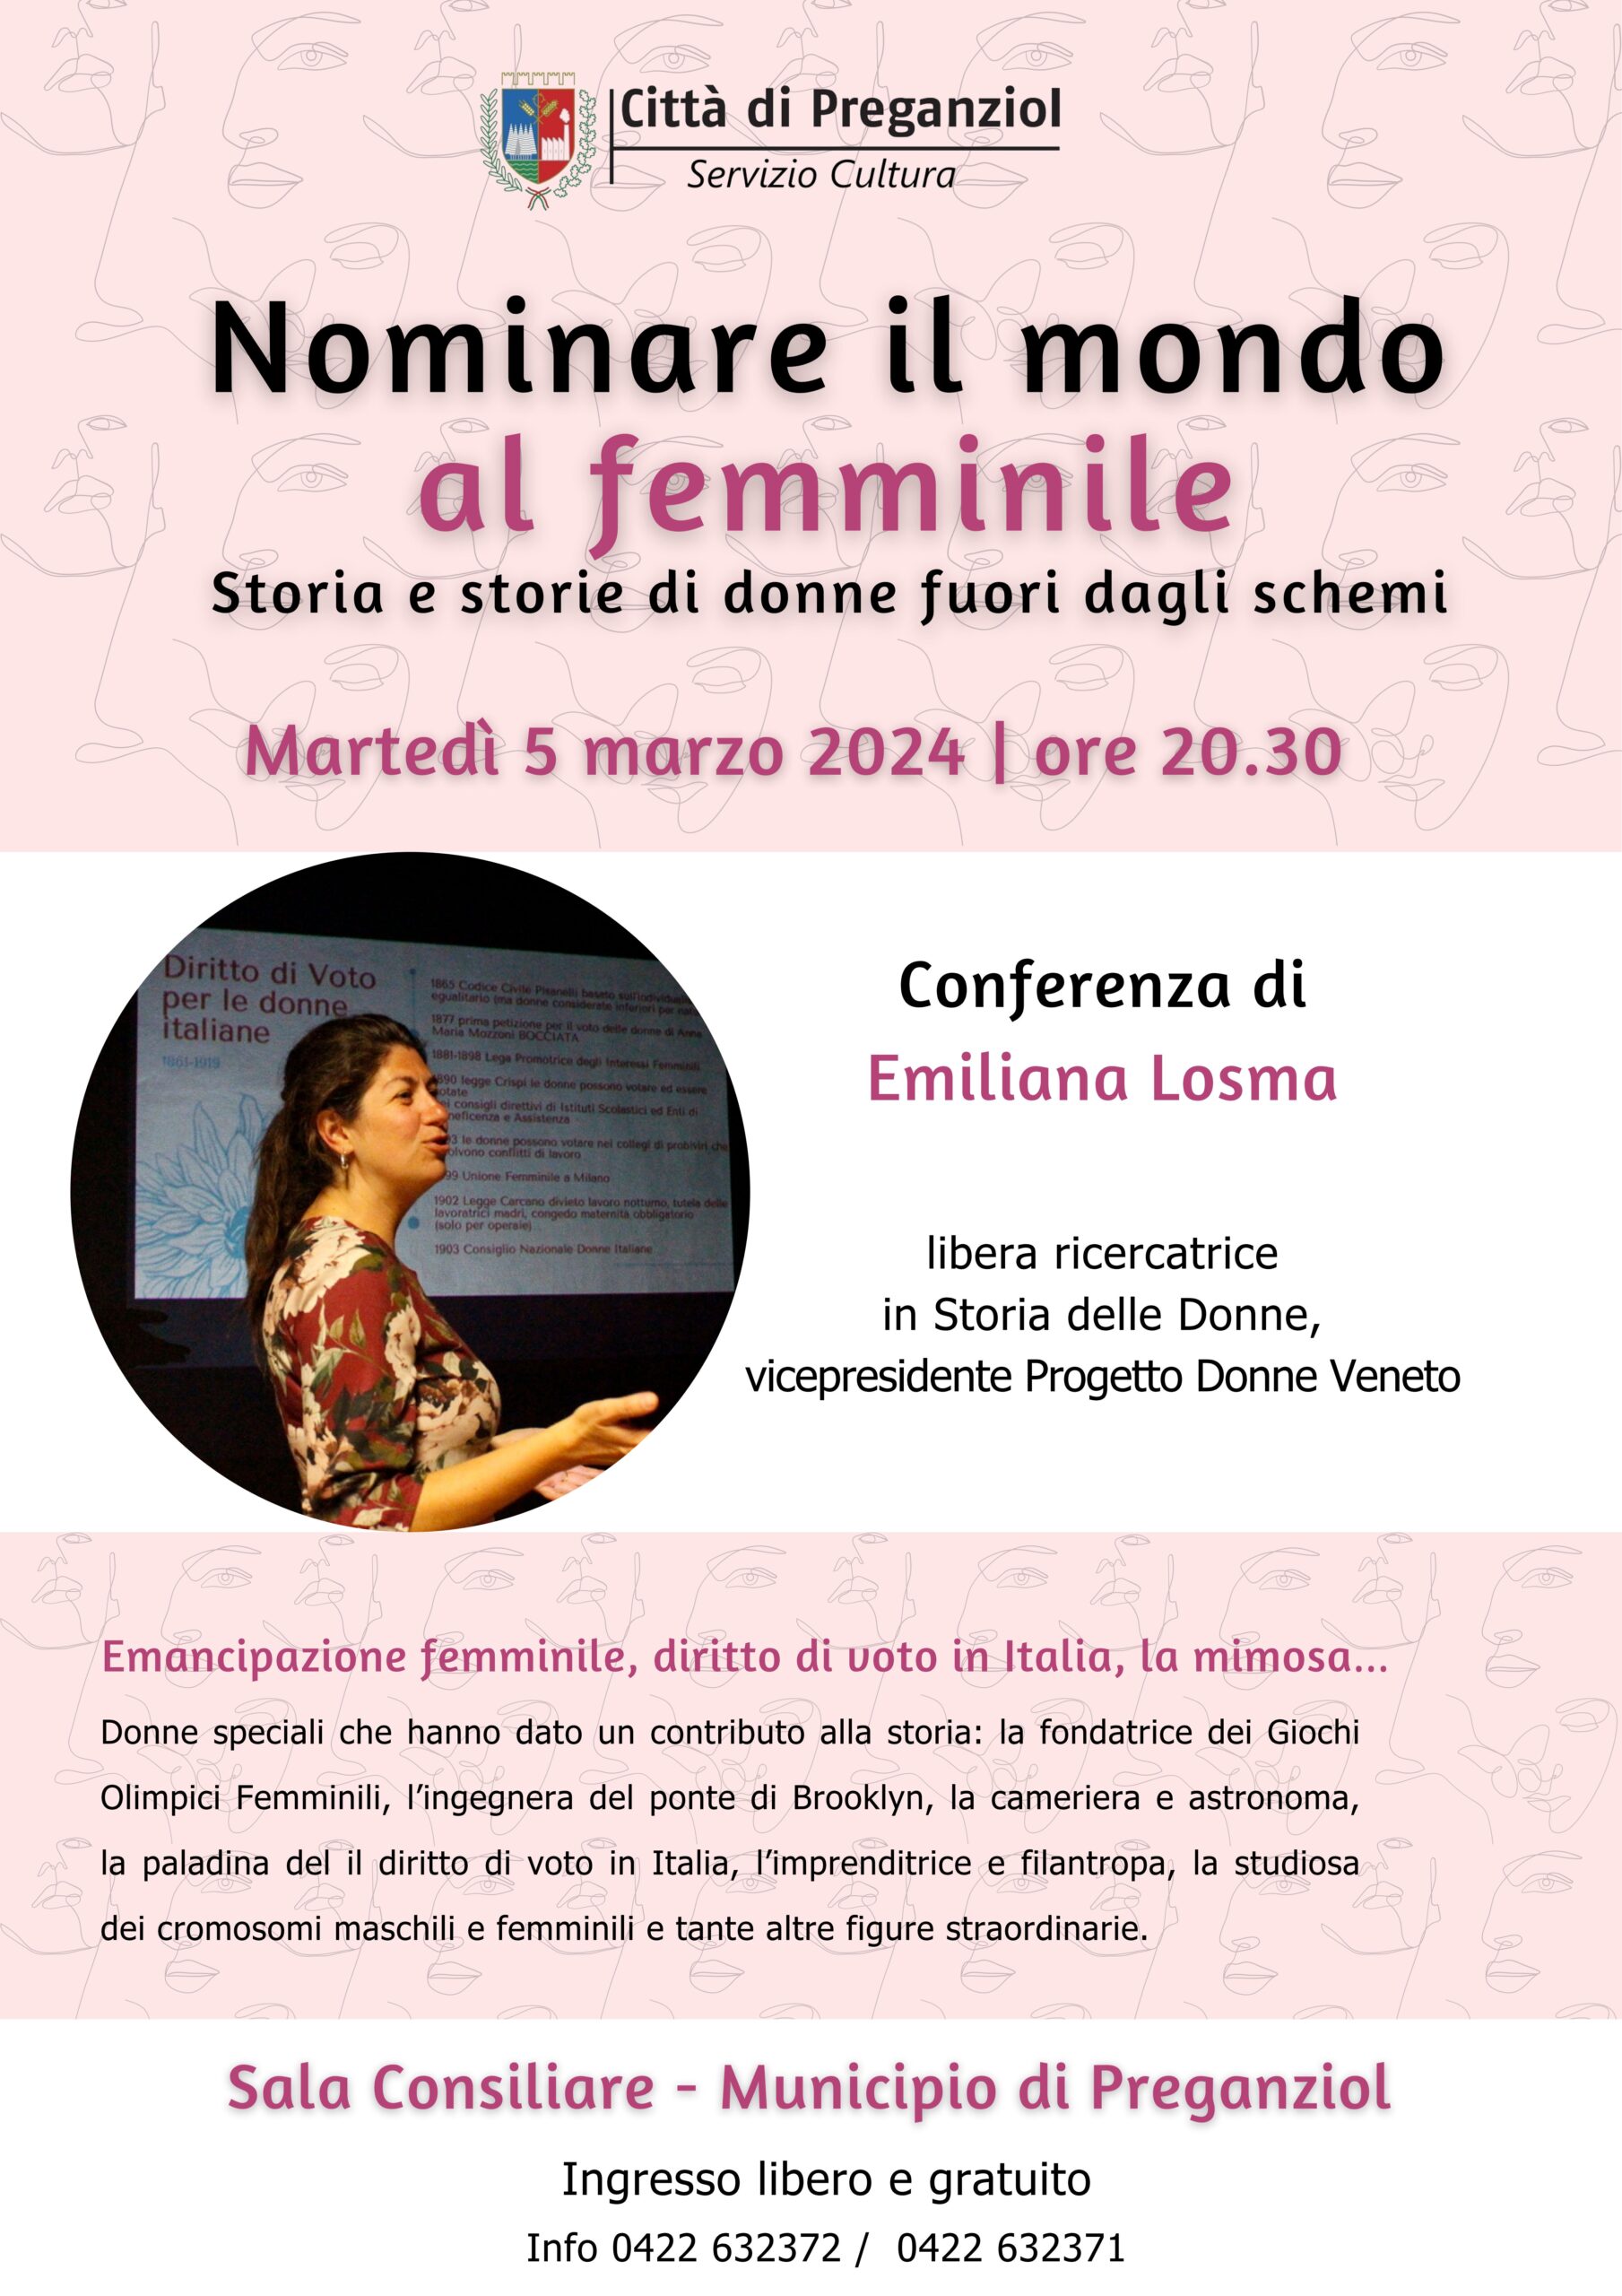 “Nominare il mondo al femminile” Conferenza di Emiliana Losma Martedí 5 marzo ore 20.30